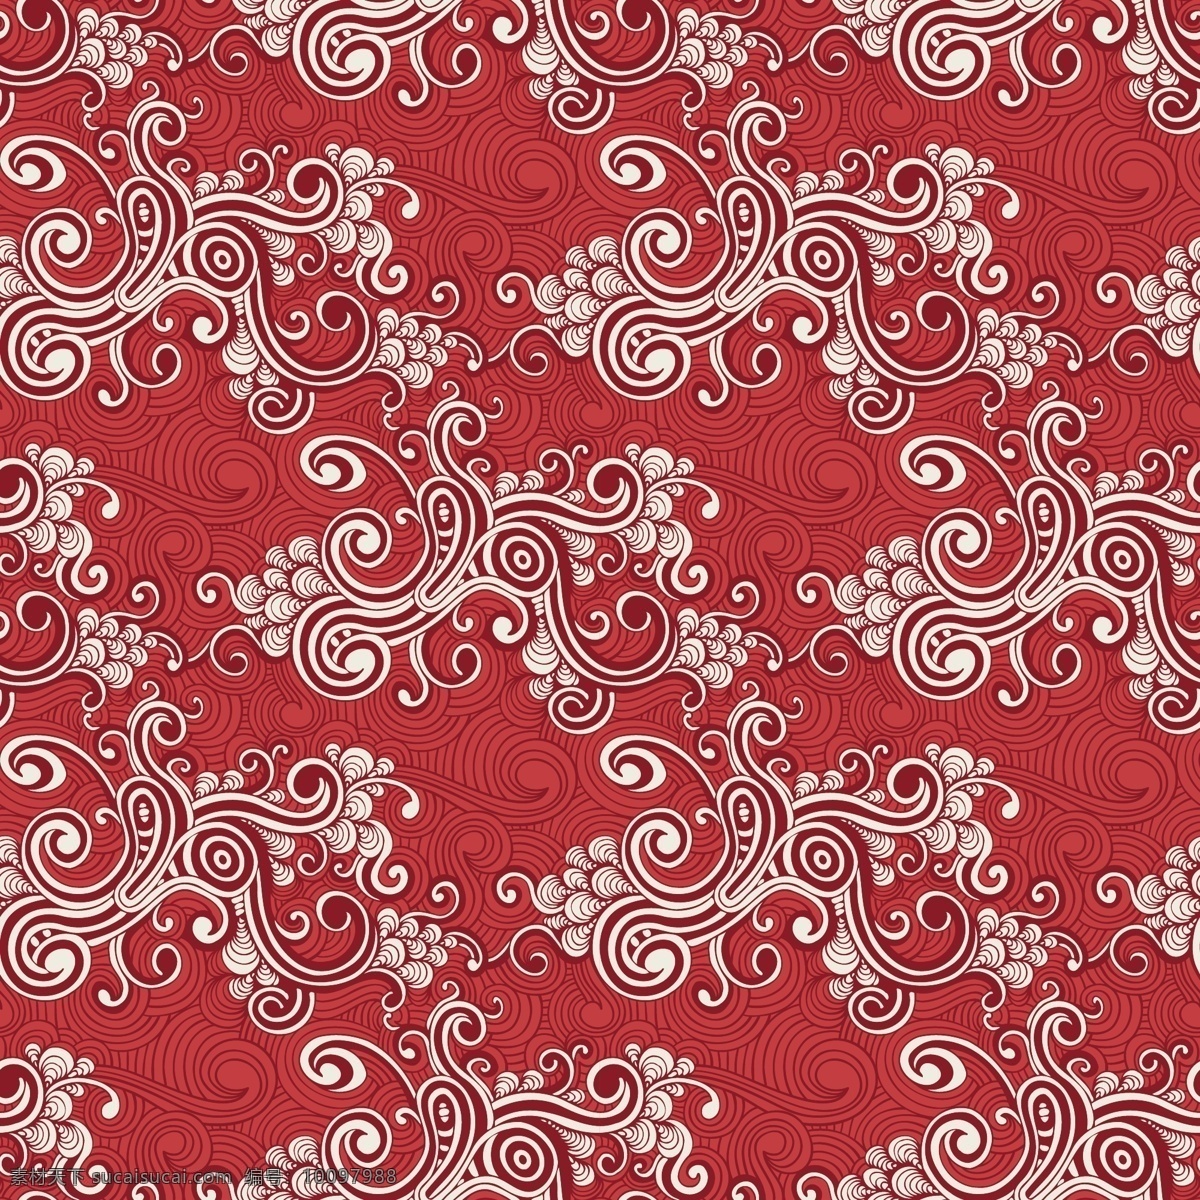 红色漩涡图案 复古 图案 抽象 装饰 模式 漩涡 红色 抽纱 卷发 装饰品 流体